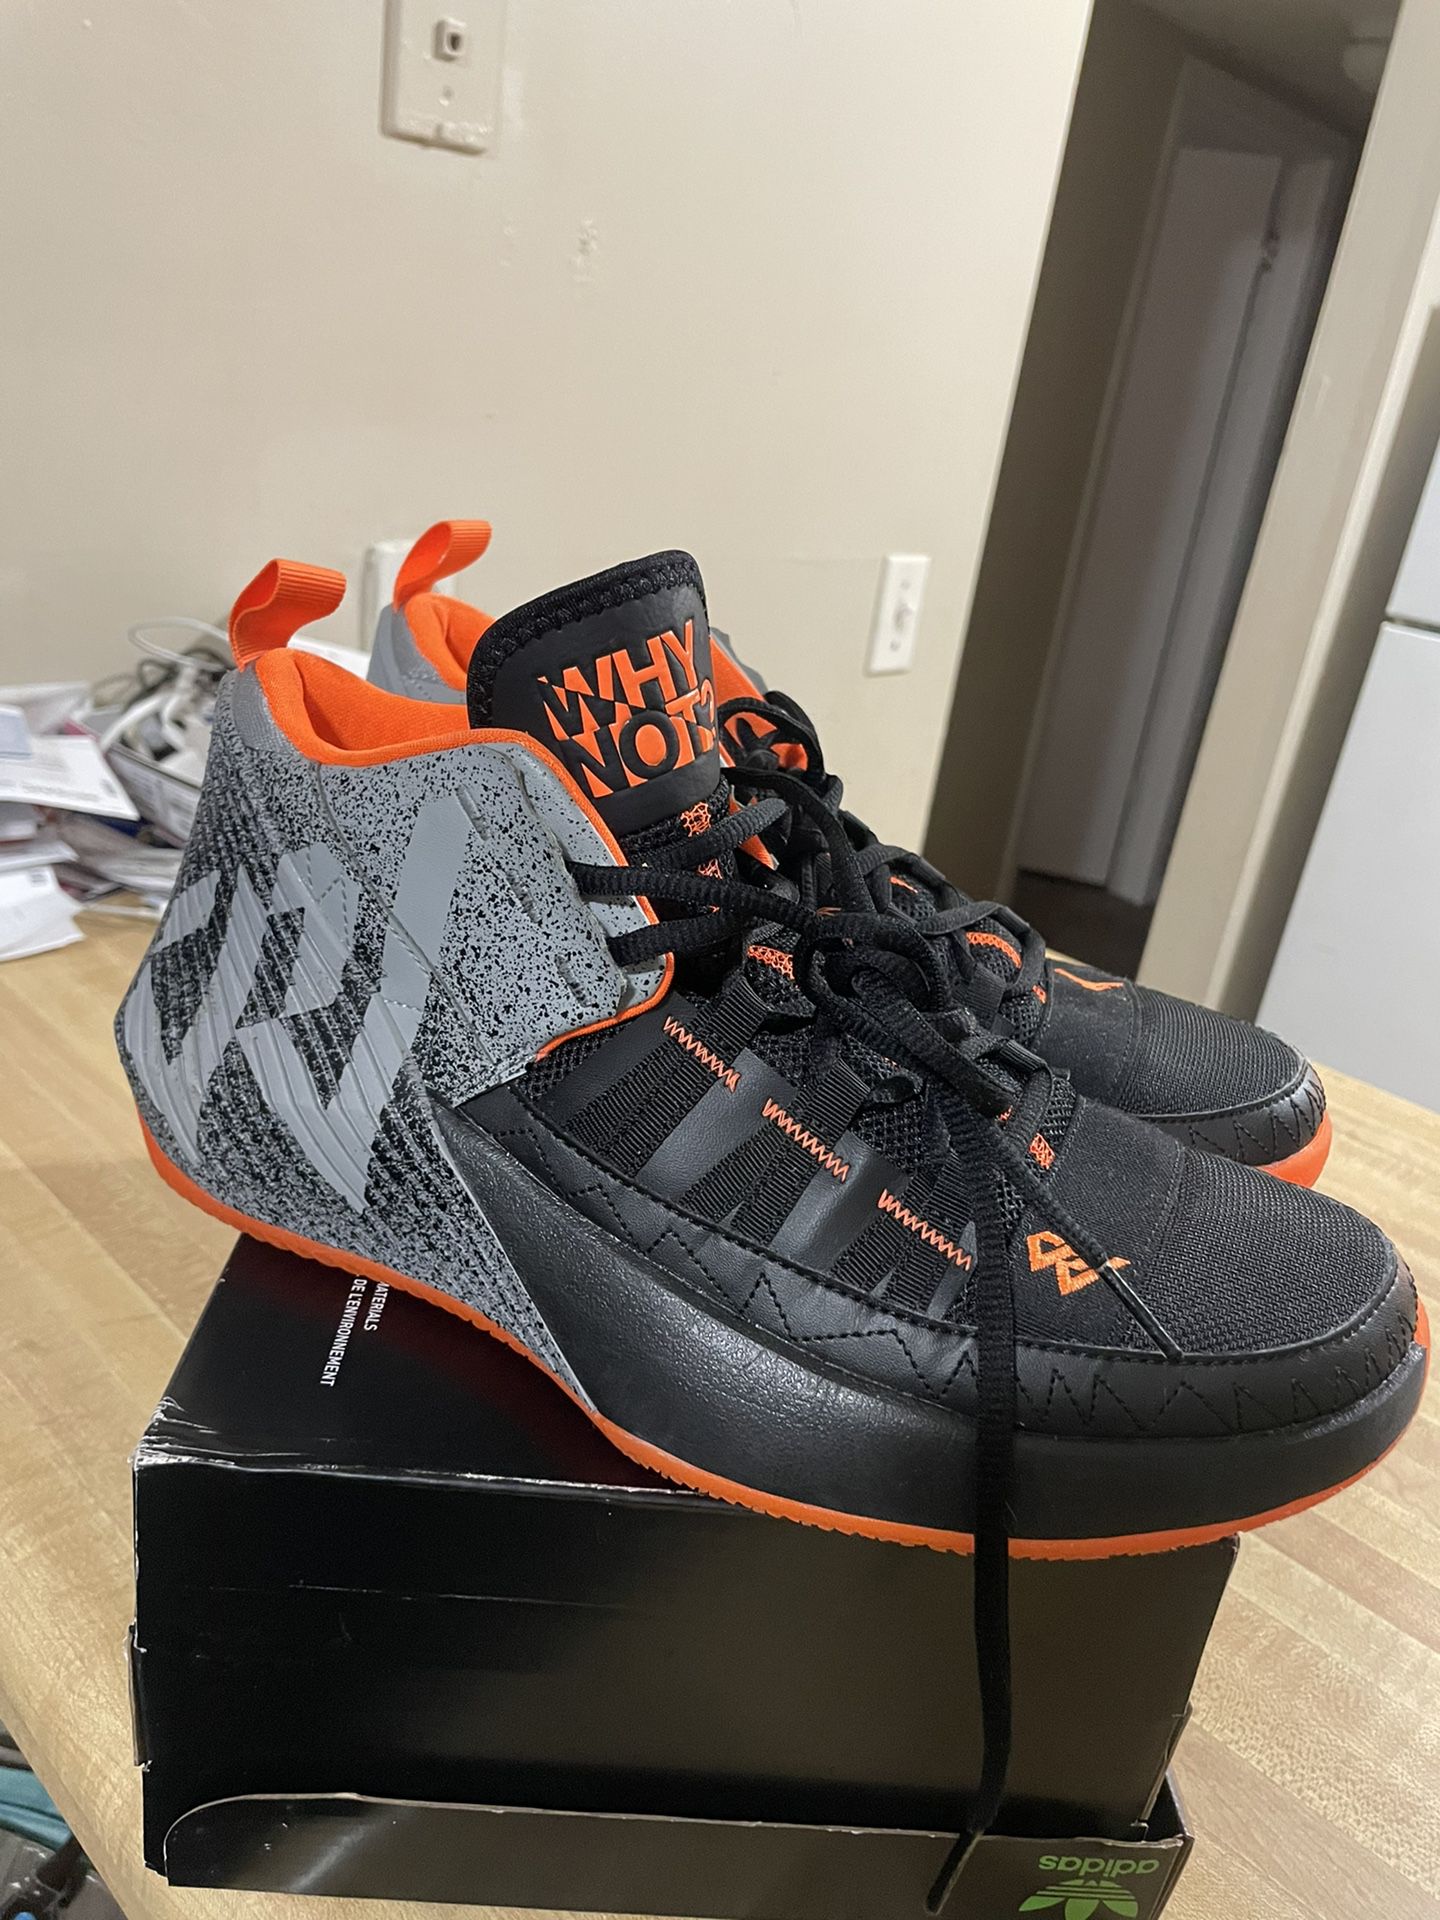  Air Jordan Jordan Why Not Zer0.1 'Chaos Black' Mens Sneakers - Size 9